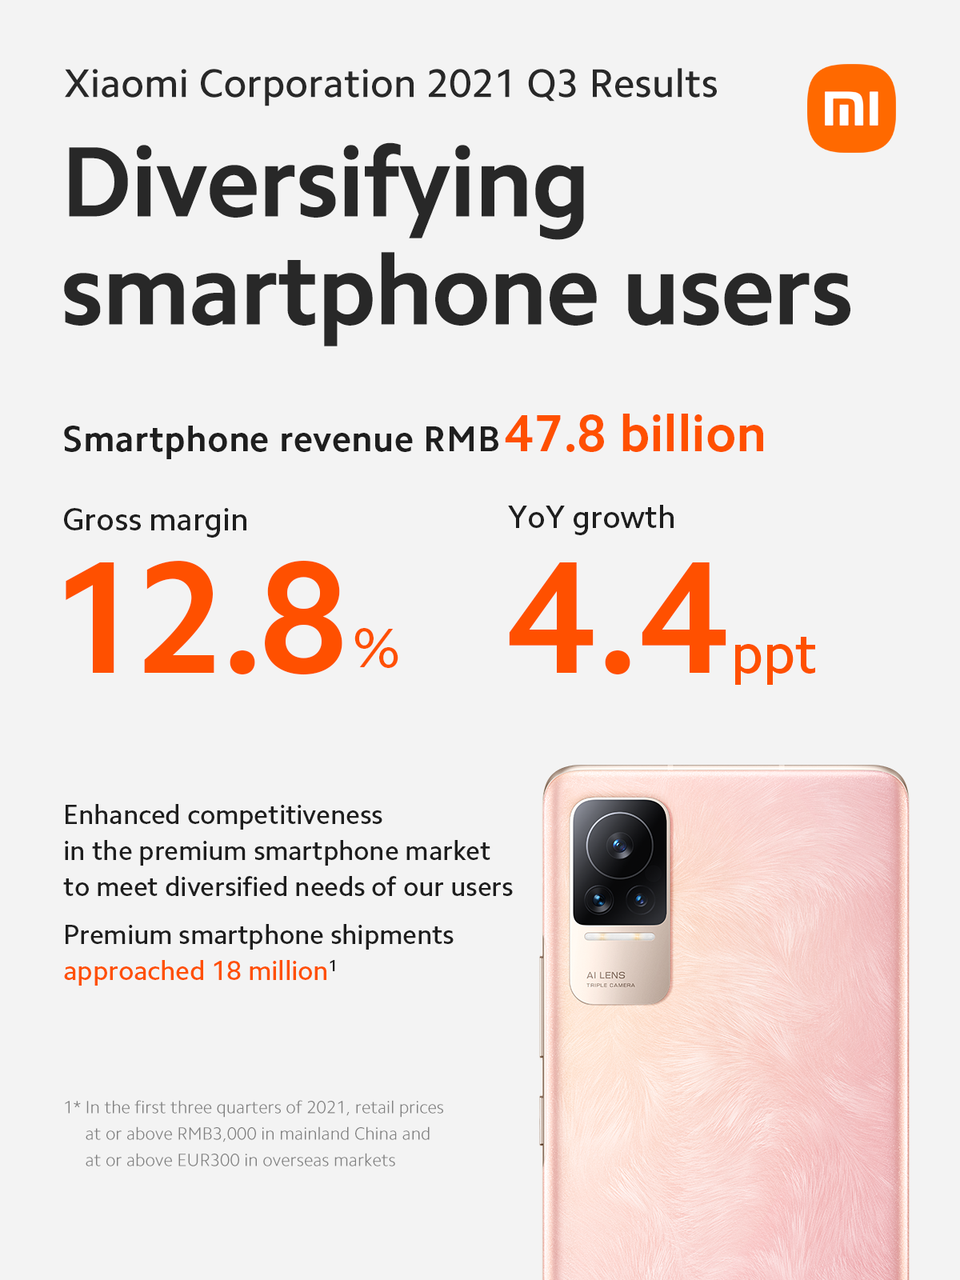 Xiaomi mencapai tren pertumbuhan pendapatan dan laba positif selama Q3 2021